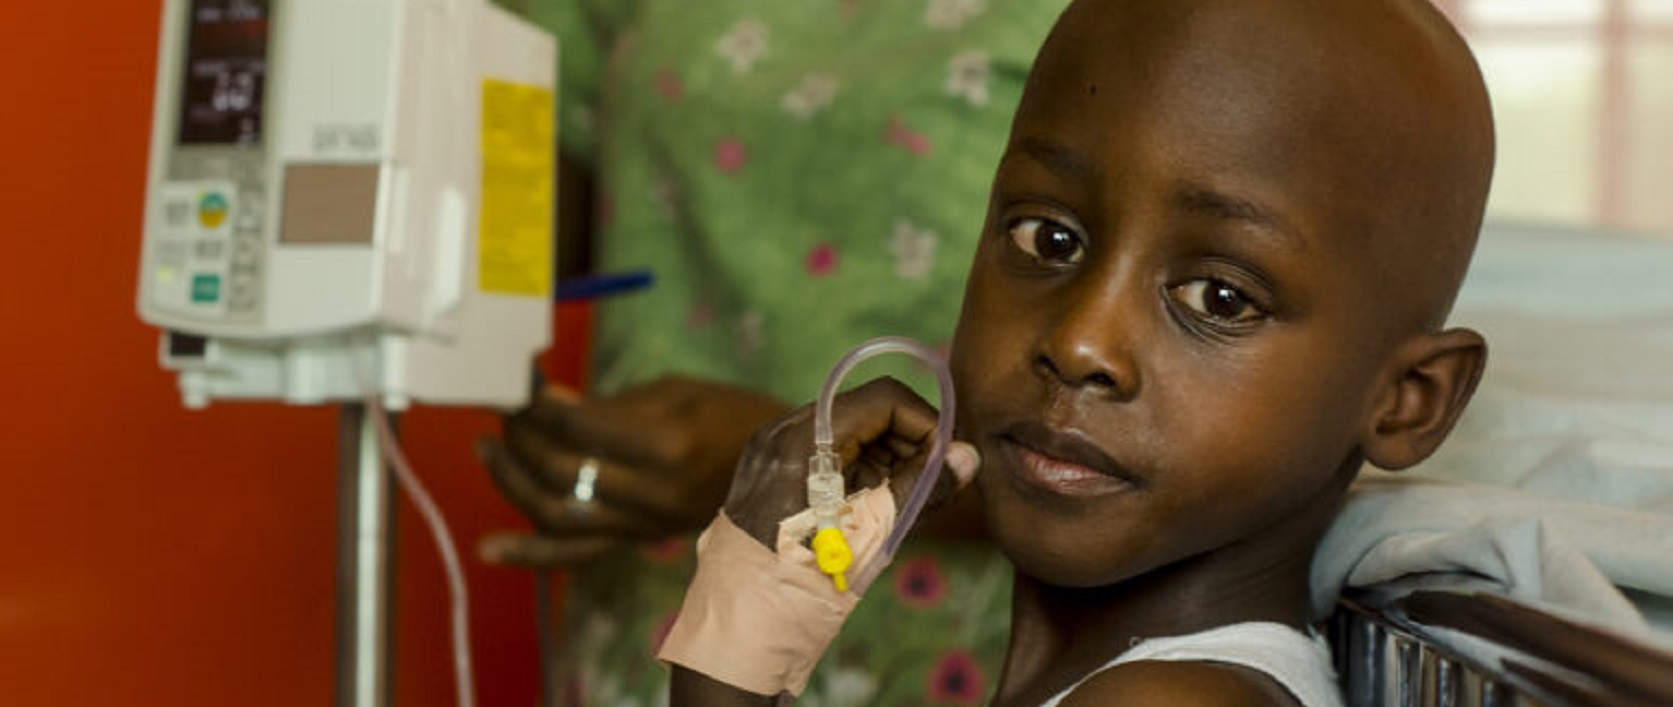 Le seul hôpital en Haïti à soigner les enfants atteints de cancer